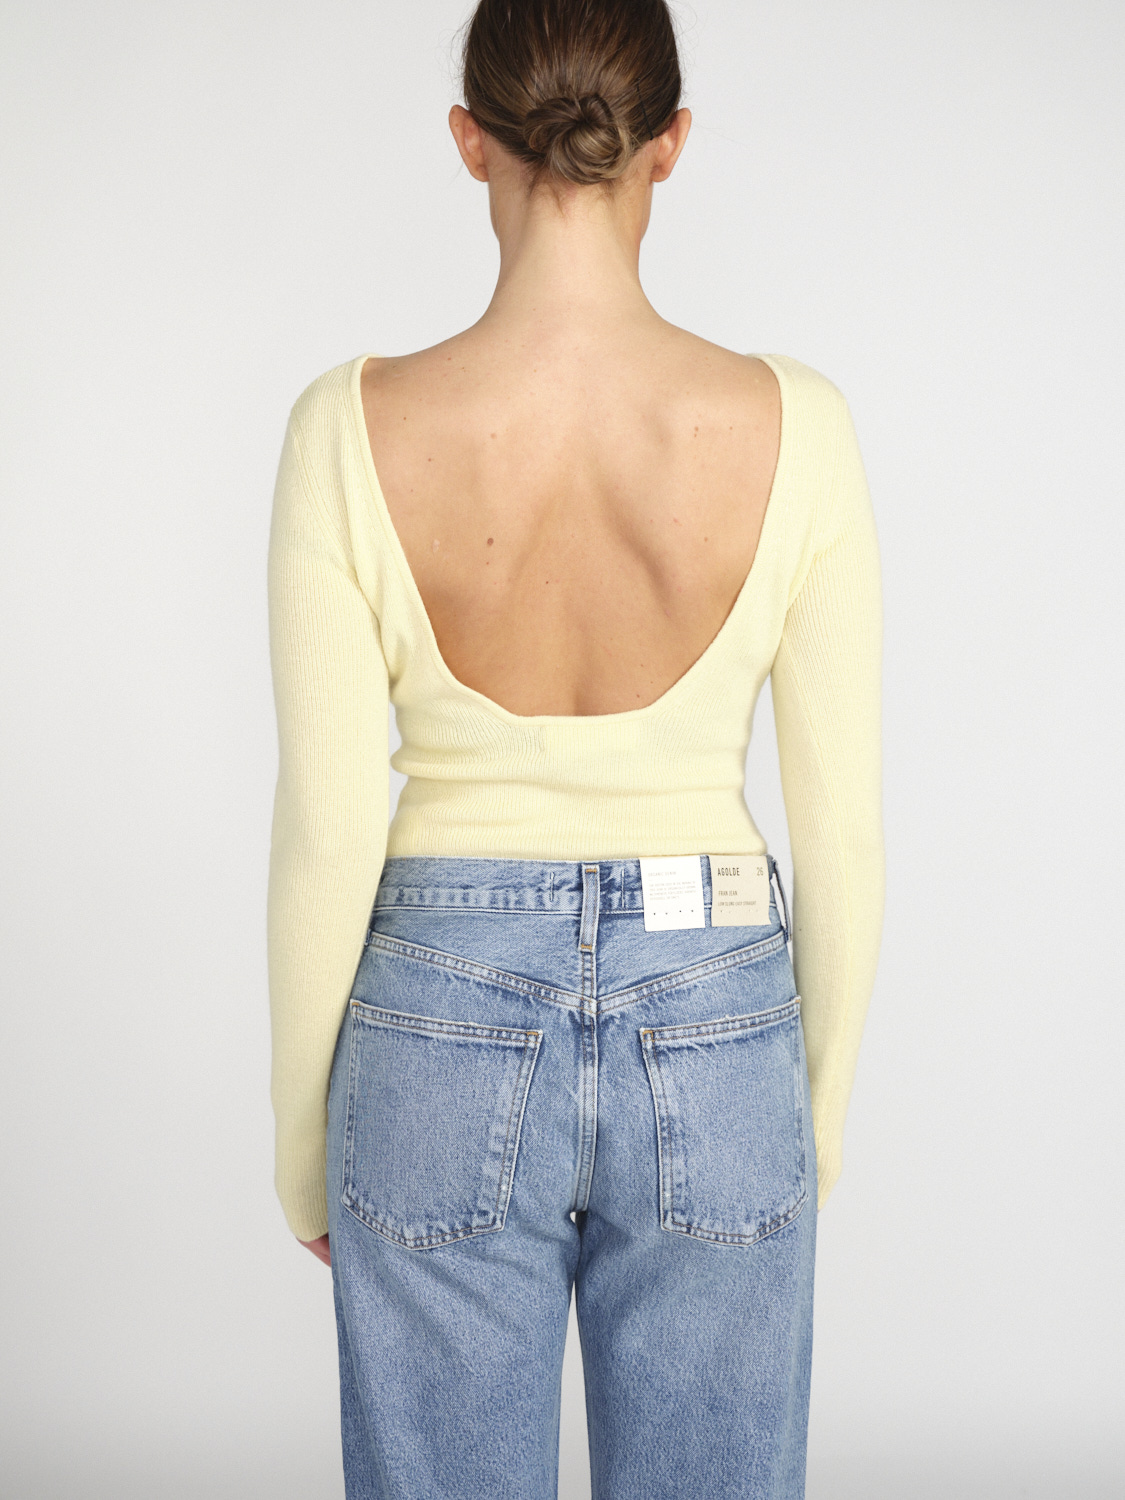 Lisa Yang Juliette – Pullover aus Cashmere mit großem Rückenausschnitt  gelb XS/S